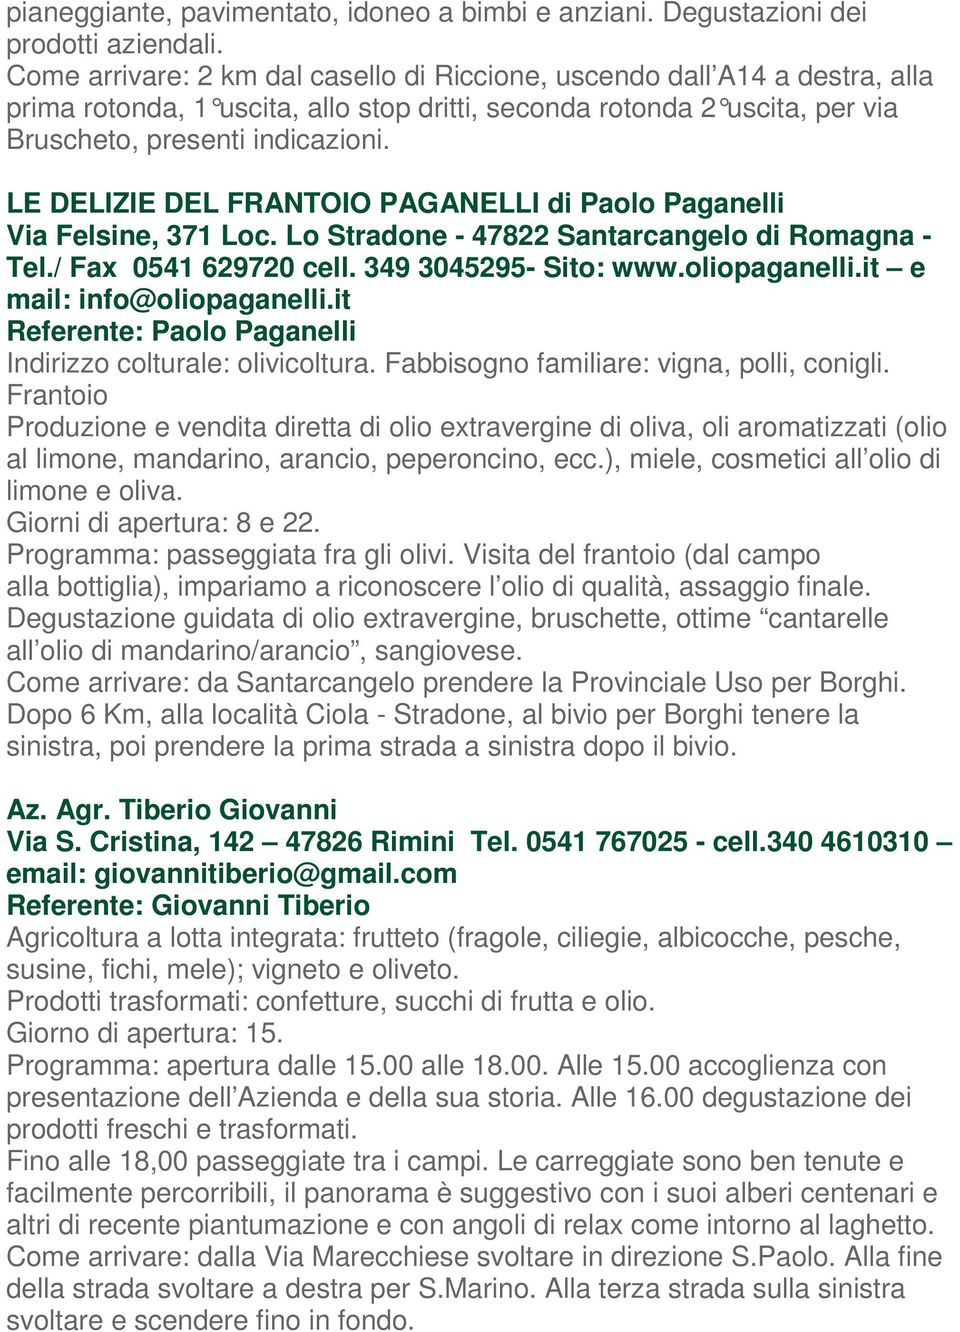 10 LE DELIZIE DEL FRANTOIO PAGANELLI di Paolo Paganelli Via Felsine, 371 Loc. Lo Stradone - 47822 Santarcangelo di Romagna - Tel./ Fax 0541 629720 cell. 349 3045295- Sito: www.oliopaganelli.